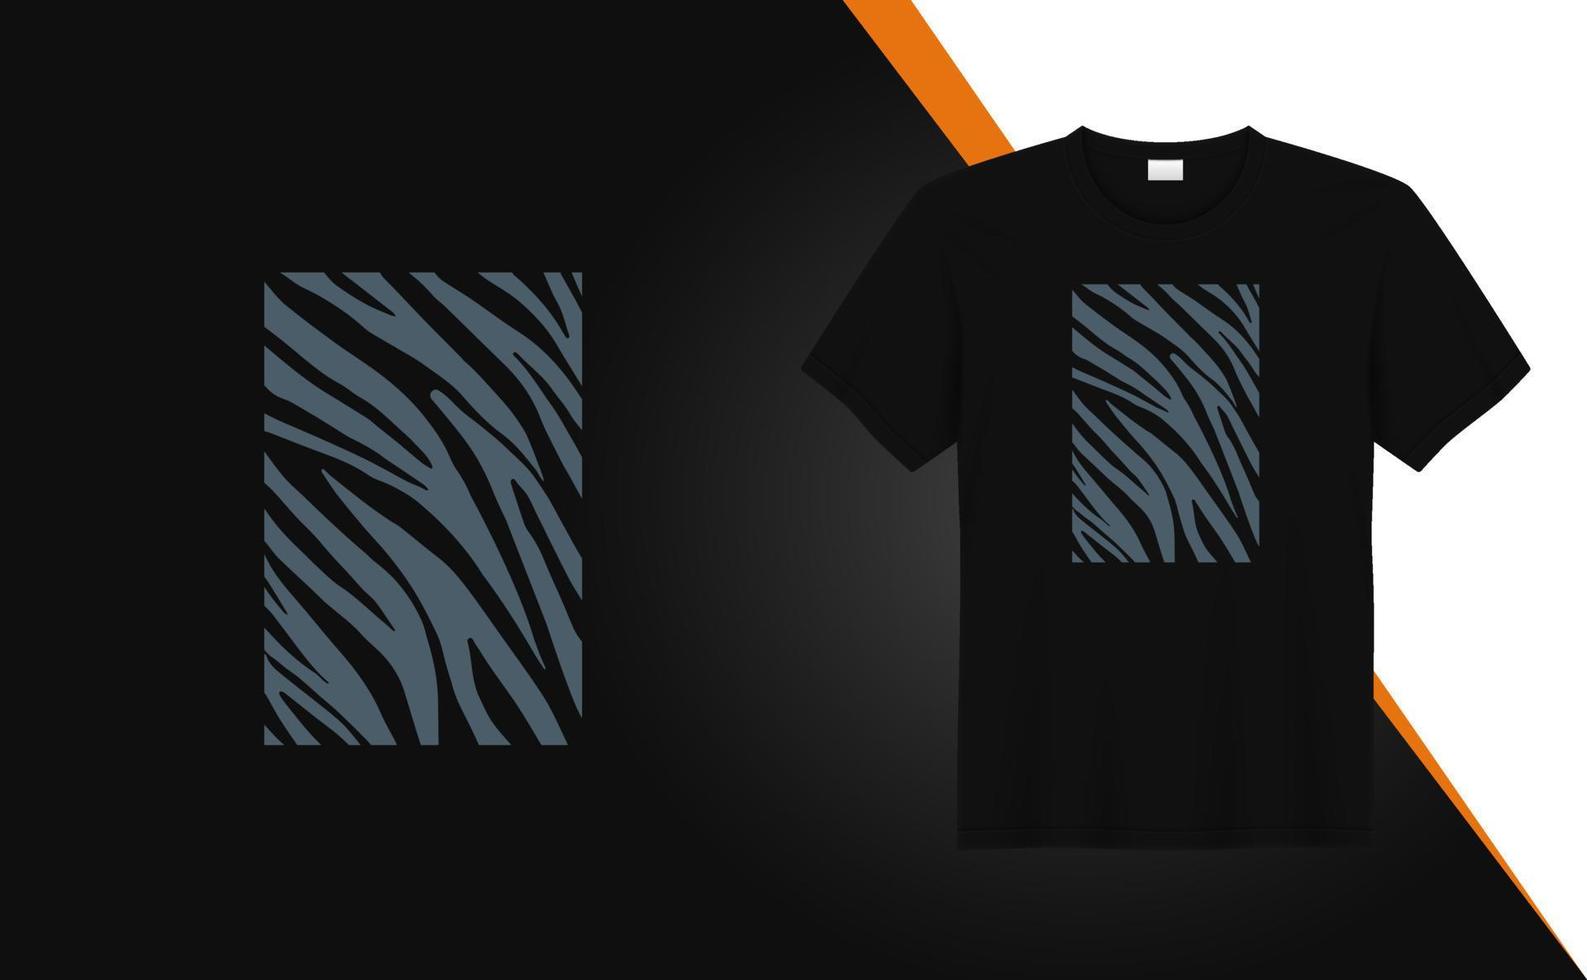 design alla moda della maglietta effetto zebra con motivo a trama per la stampa di magliette, moda abbigliamento, poster, arte della parete. arte dell'illustrazione di vettore del modello della tigre per la maglietta.